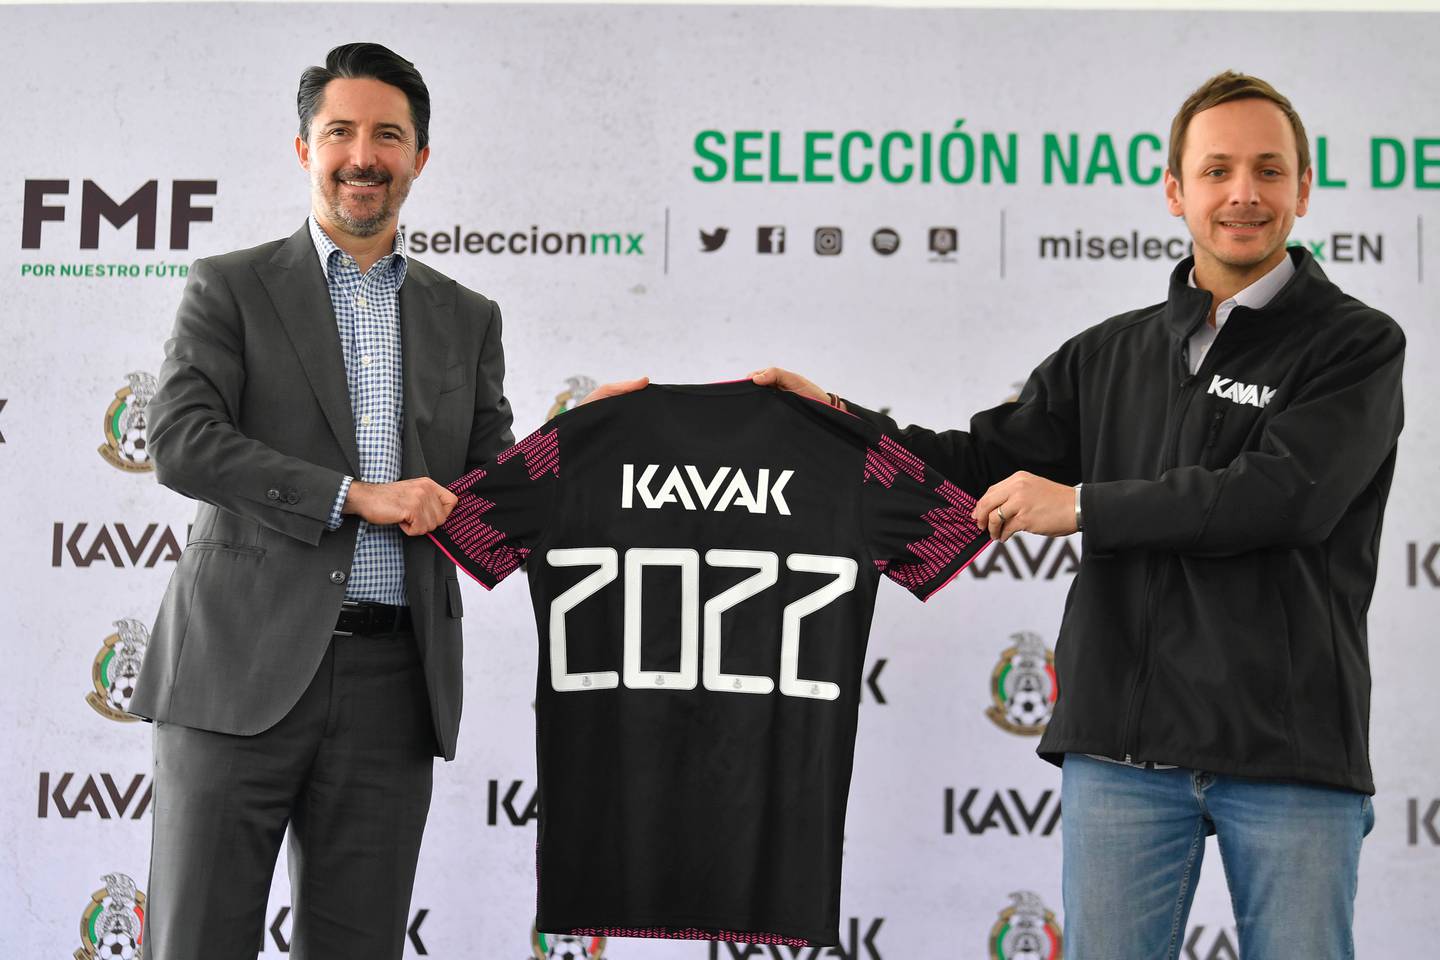 Kavak se convirtió en uno de los patrocinadores de la Selección Mexicana de futbol.